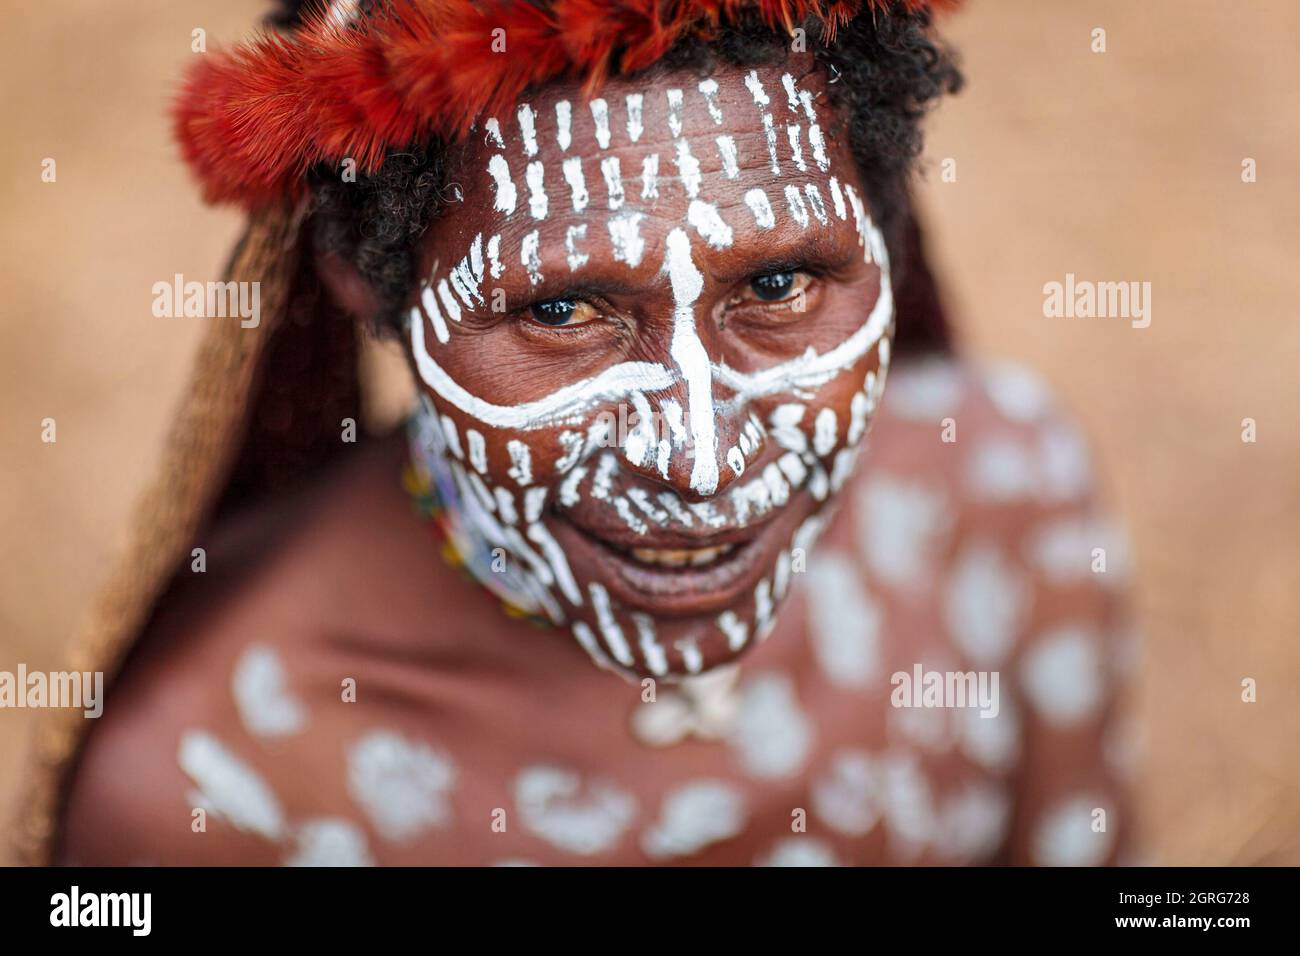 Indonesien, Papua, Stadt Wamena, Porträt einer jungen Dani-Frau, die weißes Make-up auf Gesicht und Körper trägt. Baliem Valley Cultural Festival, jedes Jahr im August kommen Stämme zusammen, um uralte Kriegsszenen aufzuführen, Parade und Tanz in traditioneller Kleidung Stockfoto